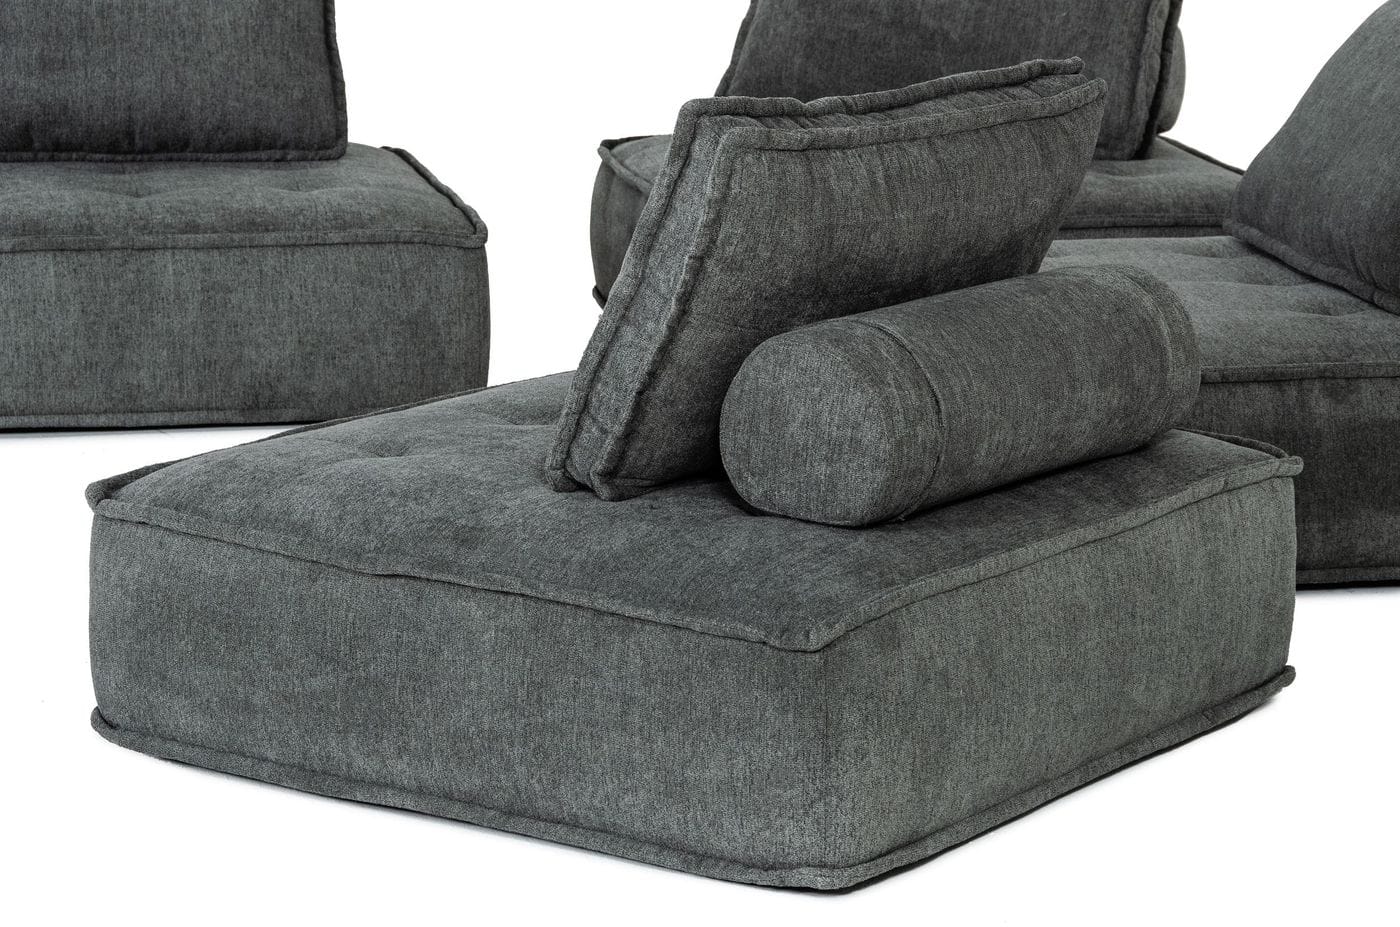 VIG Furniture Divani Casa Nolden Dark Grey Fabric Modular Sectional Sofa